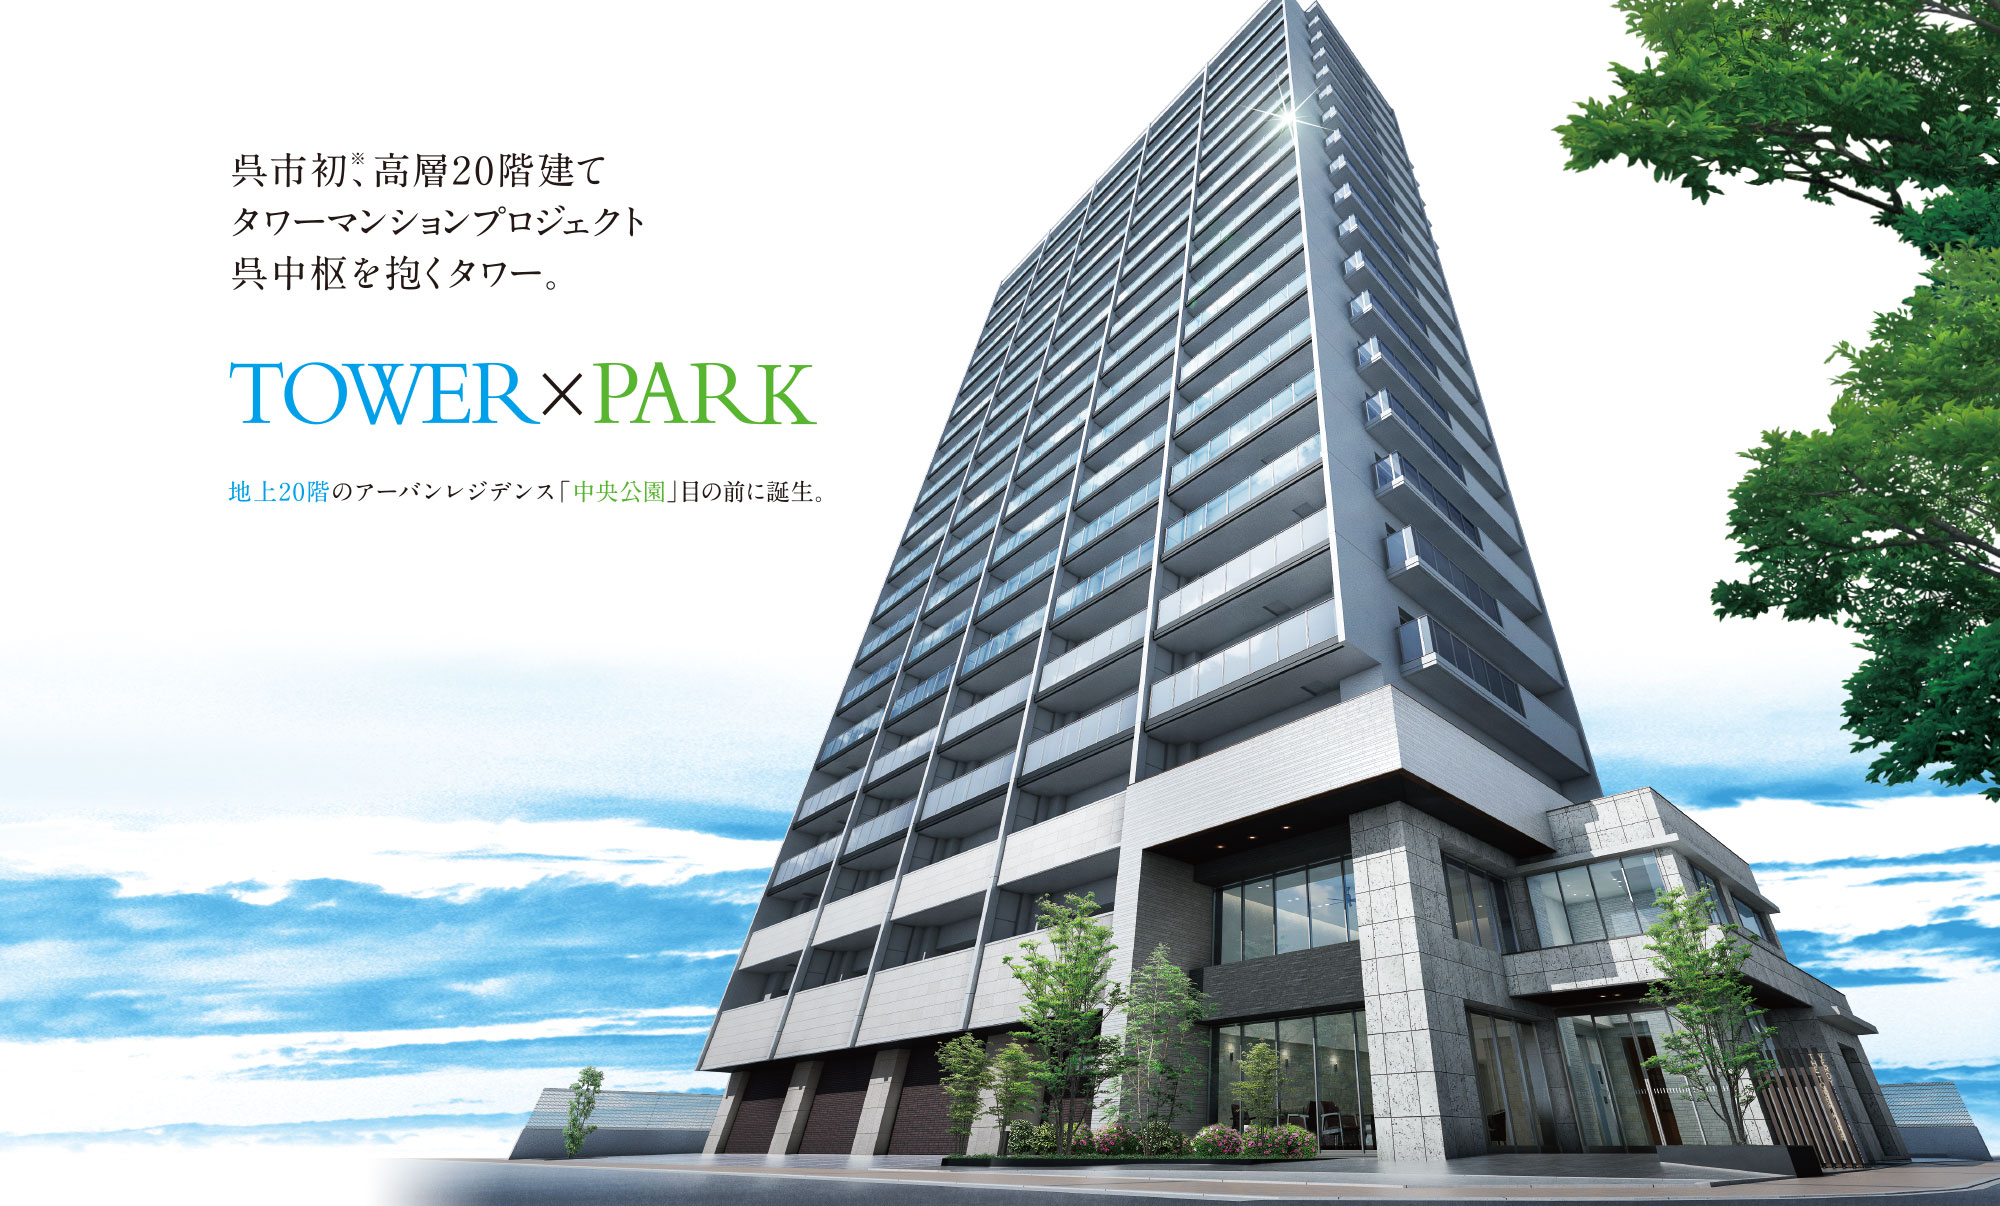 呉市初、高層20階建てタワーマンションプロジェクト 呉中枢を抱くタワー。TOWER×PARK 地上20階のアーバンレジデンス「中央公園」目の前に誕生。